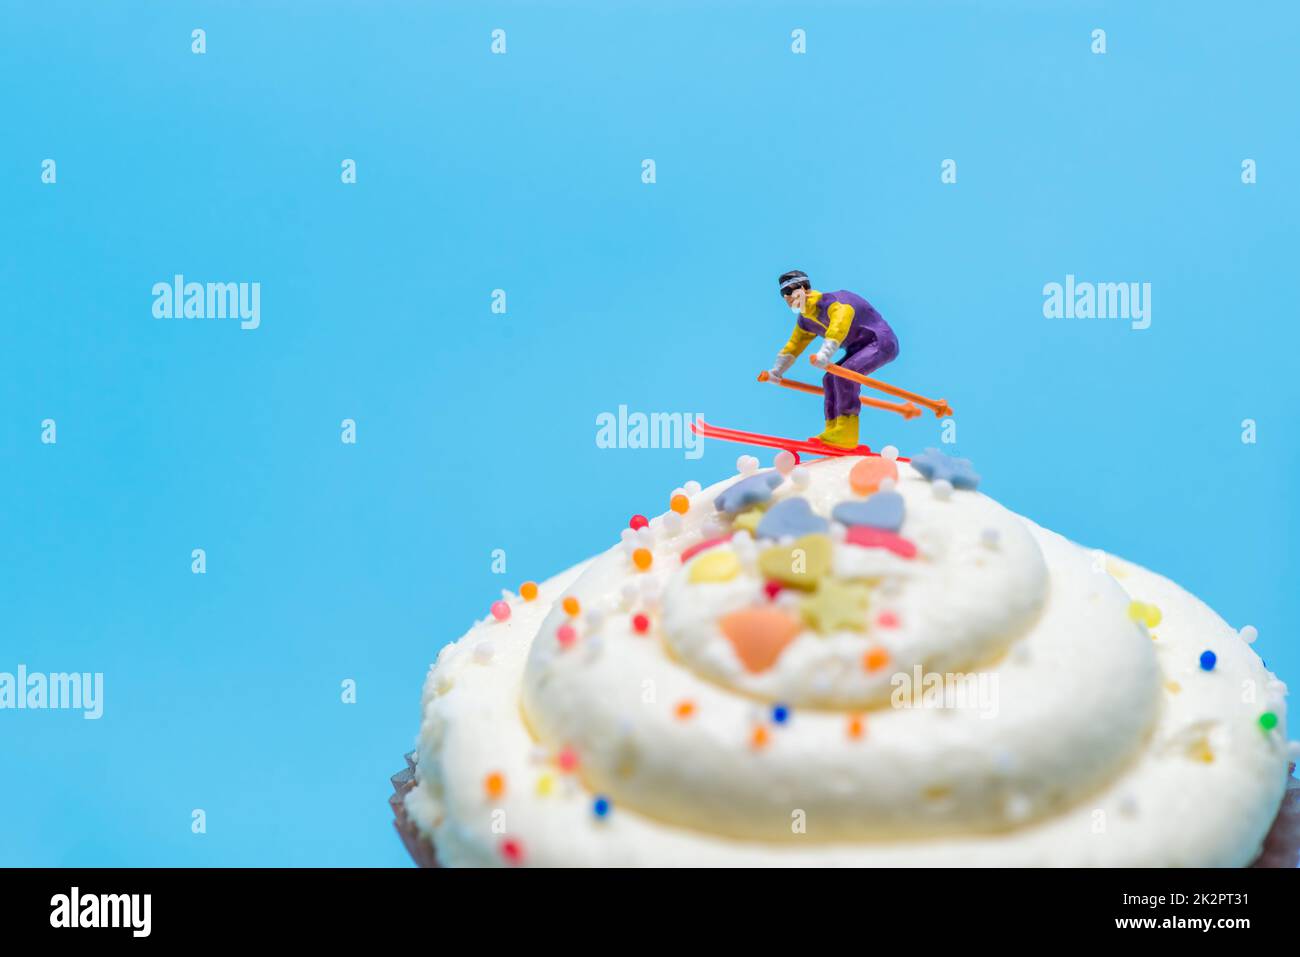 Skieur miniature skier en bas d'un cupcake Banque D'Images